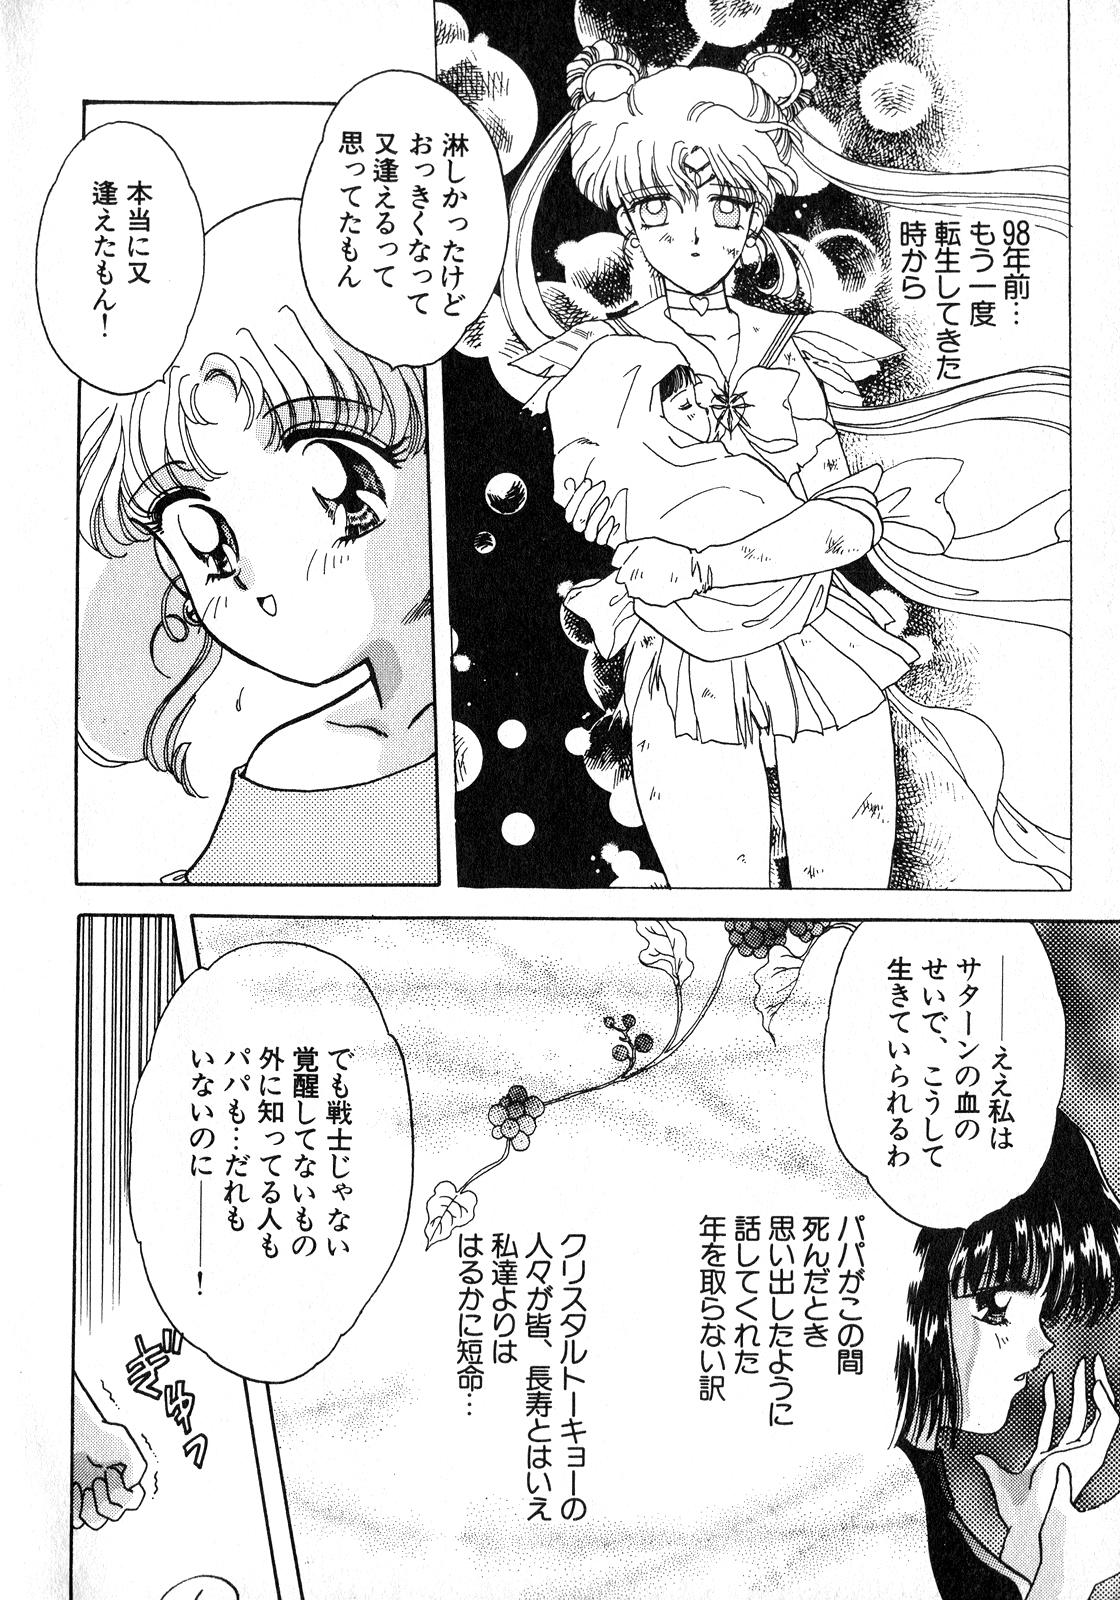 Lez Fuck Lunatic Party 8 - Sailor moon Hardcore Rough Sex - Page 7